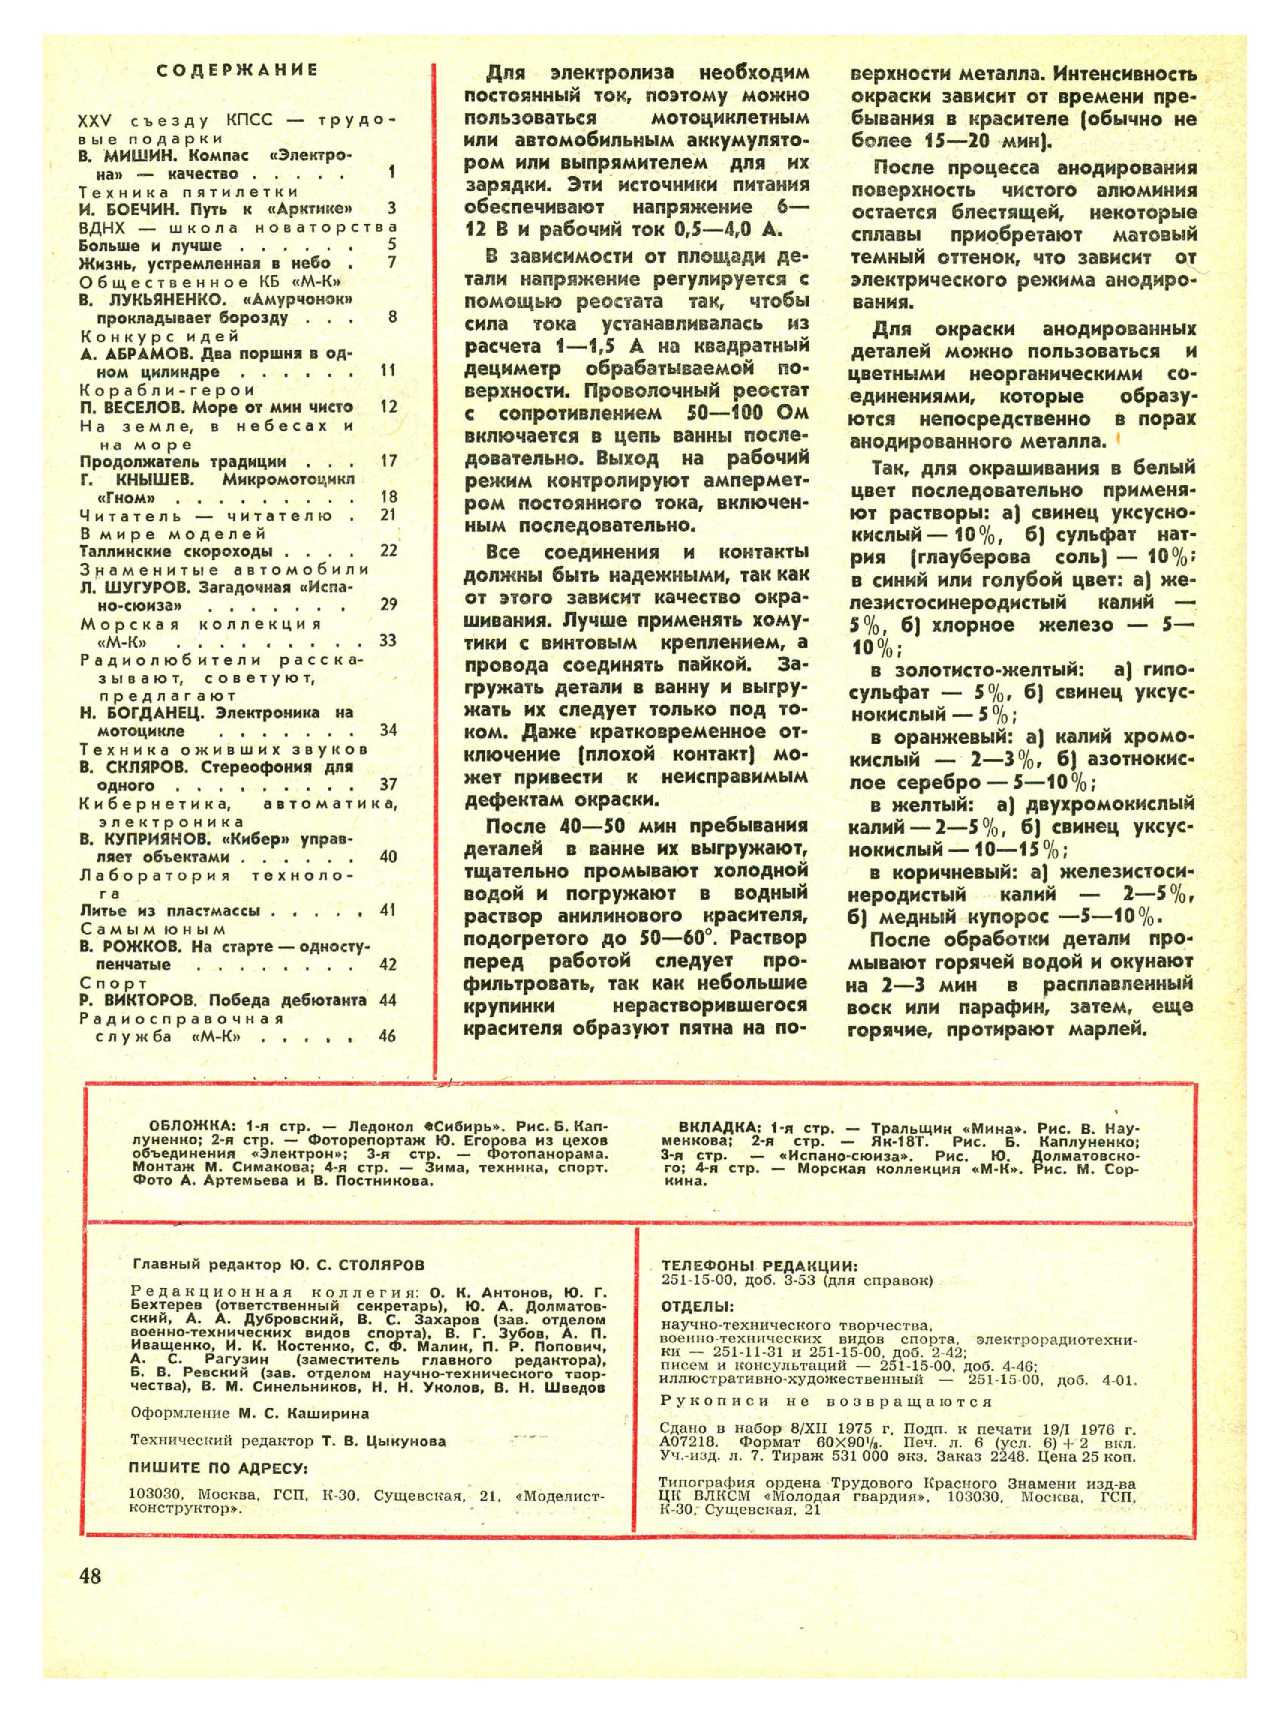 МК 2, 1976, 48 c.